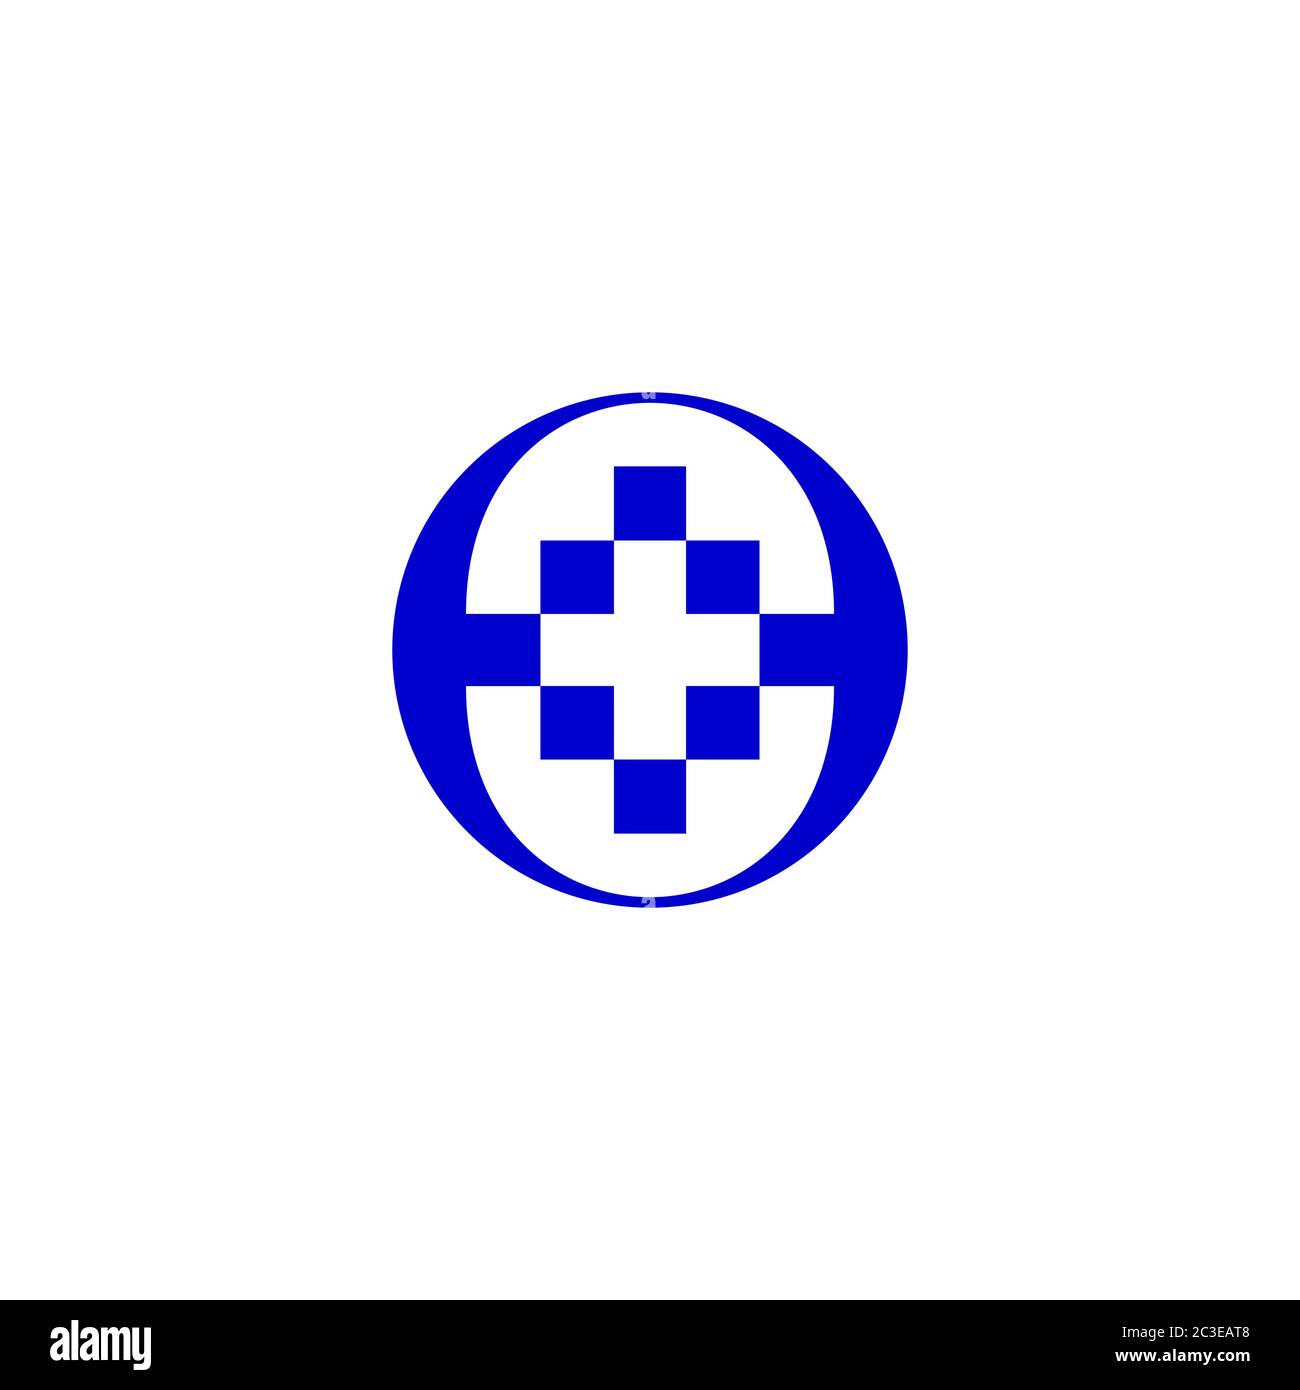 Medizinisches Kreuz Symbol auf negativem Raum, Healthcare Logo Design Konzept Vorlage, mit blauer Farbe isoliert auf weißem Hintergrund. Stock Vektor